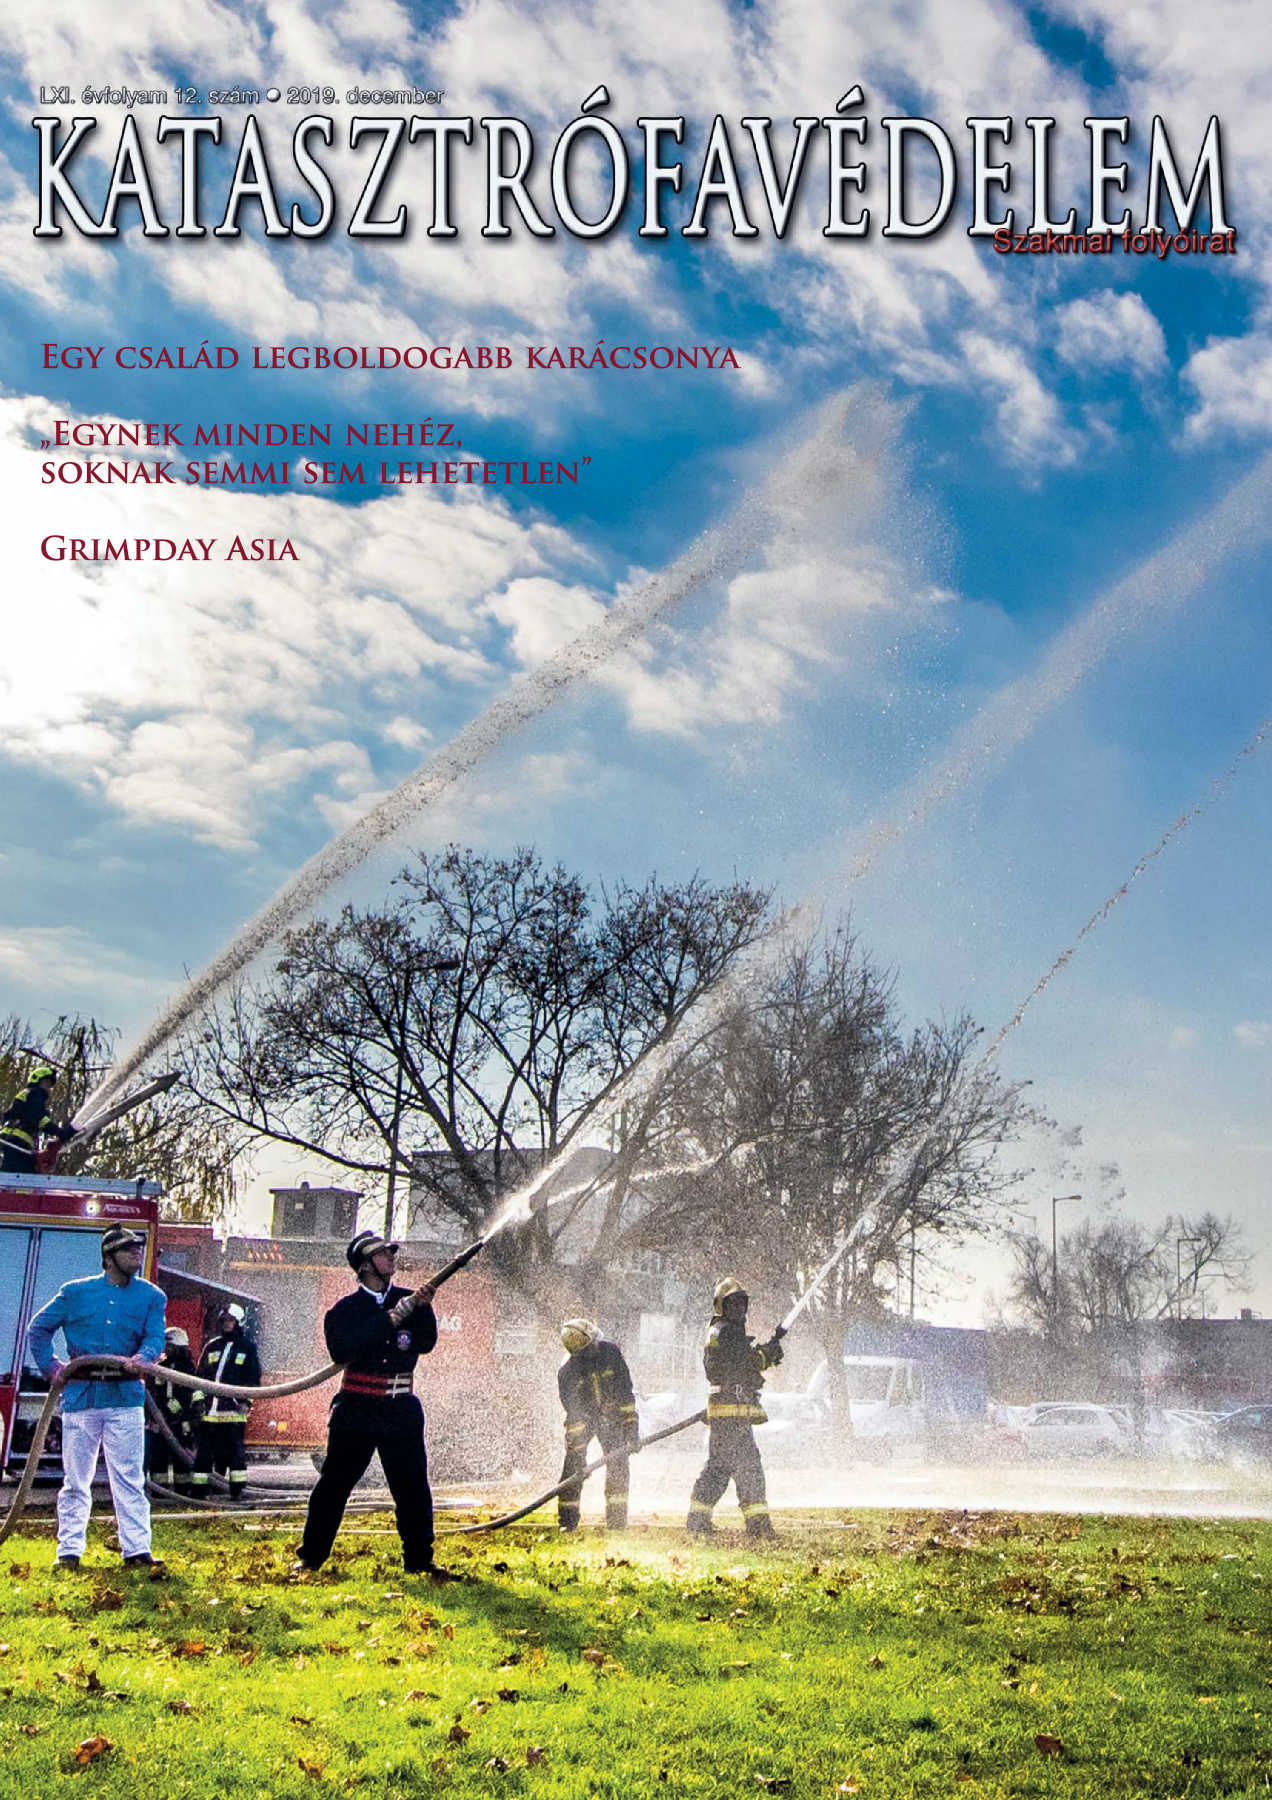 A Katasztrófavédelem magazin LXI. évfolyam 12. szám megtekintése